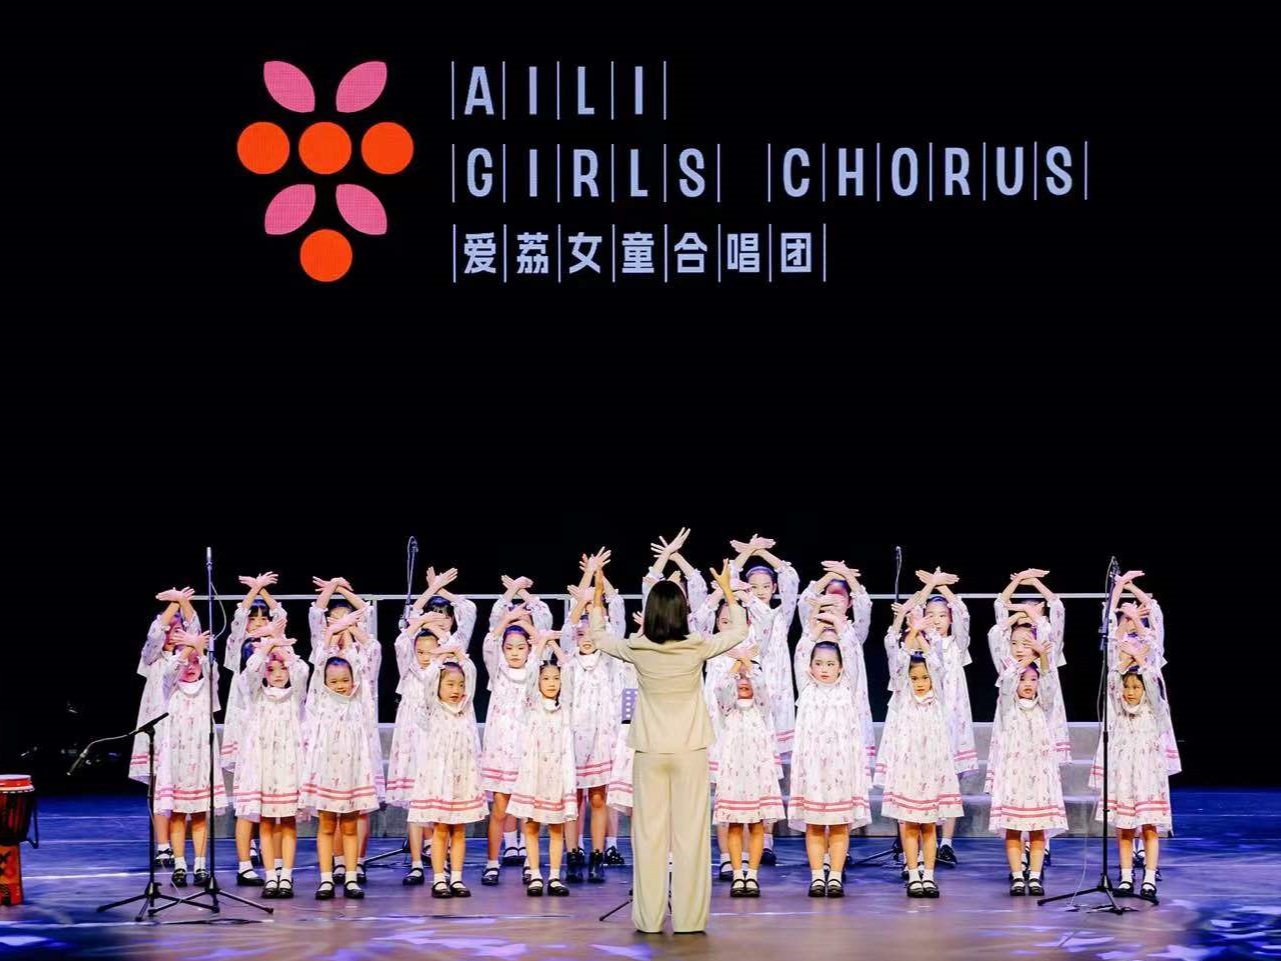 深圳公益女童合唱团成立 “爱你的声音”唱响城市未来之歌